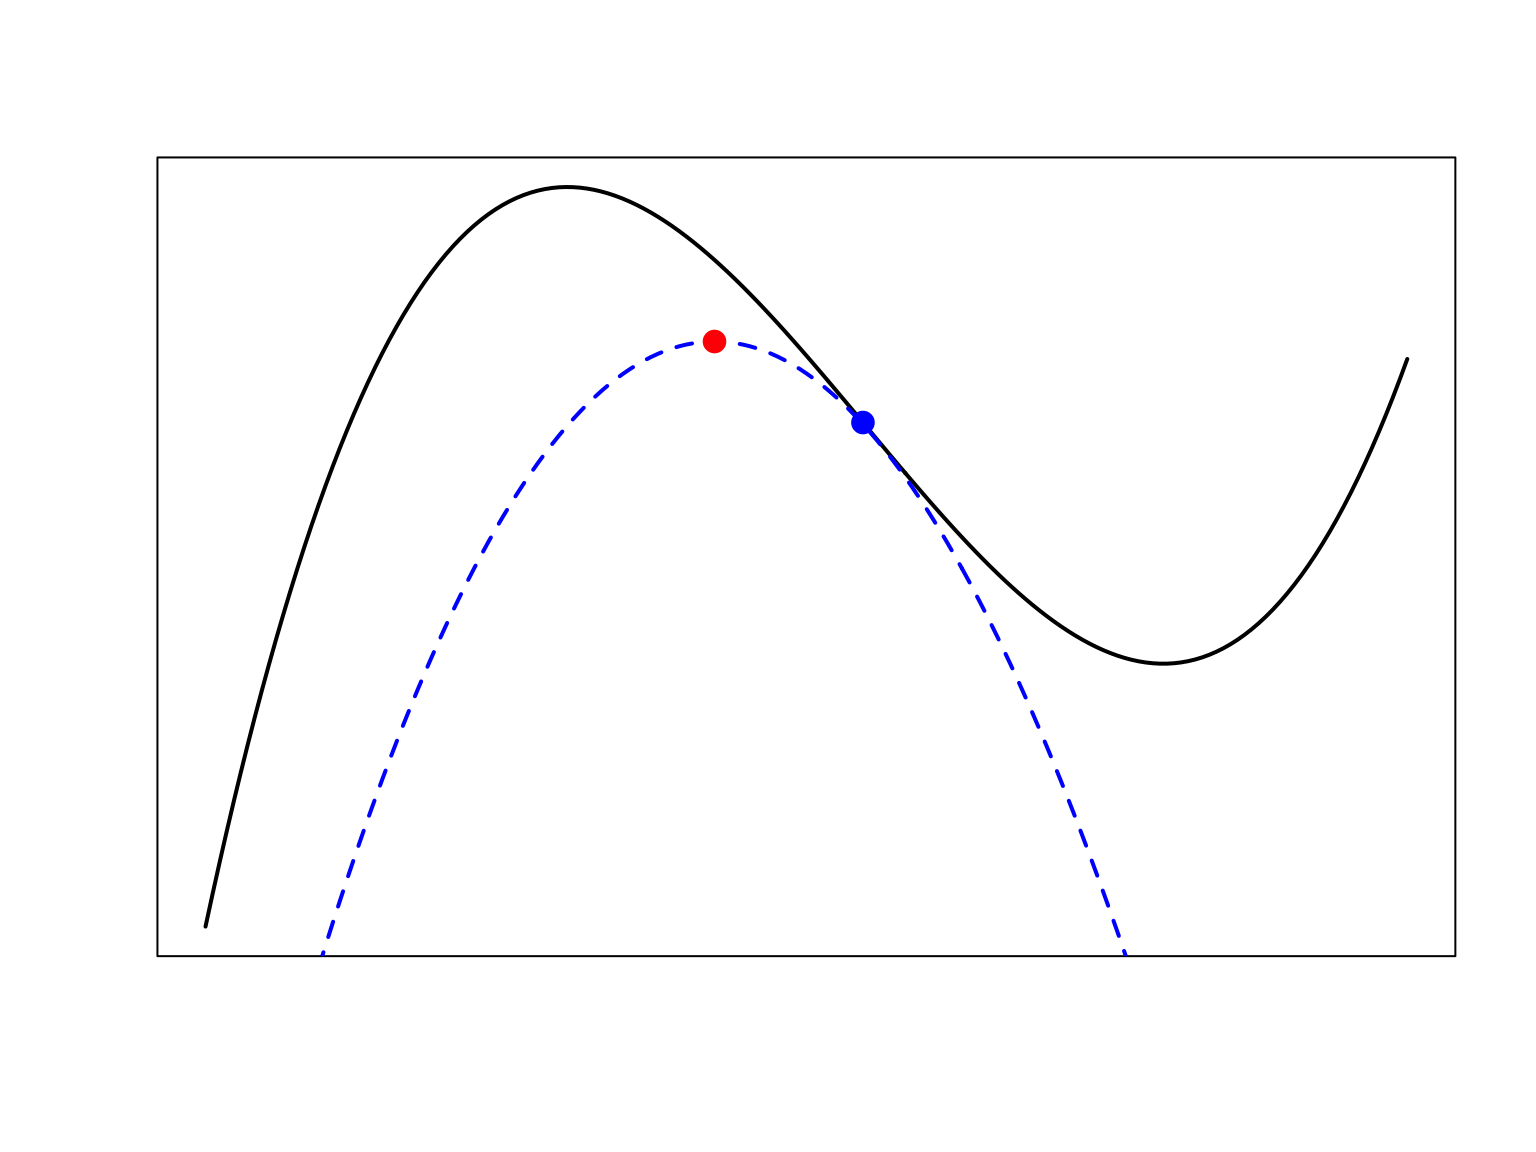 En noir la fonction à maximiser, en bleu une borne inférieure qui est égale à la fonction noir en le point bleu qui est la valeur actuelle de l’algorithme. En maximisant la fonction bleue on trouve le point rouge. En le point rouge la valeur de la fonction noire est supérieure qu’en le point bleu. On itère: maintenant il faut calculer la borne inférieure qui touche la fonction noire en le point rouge etc.